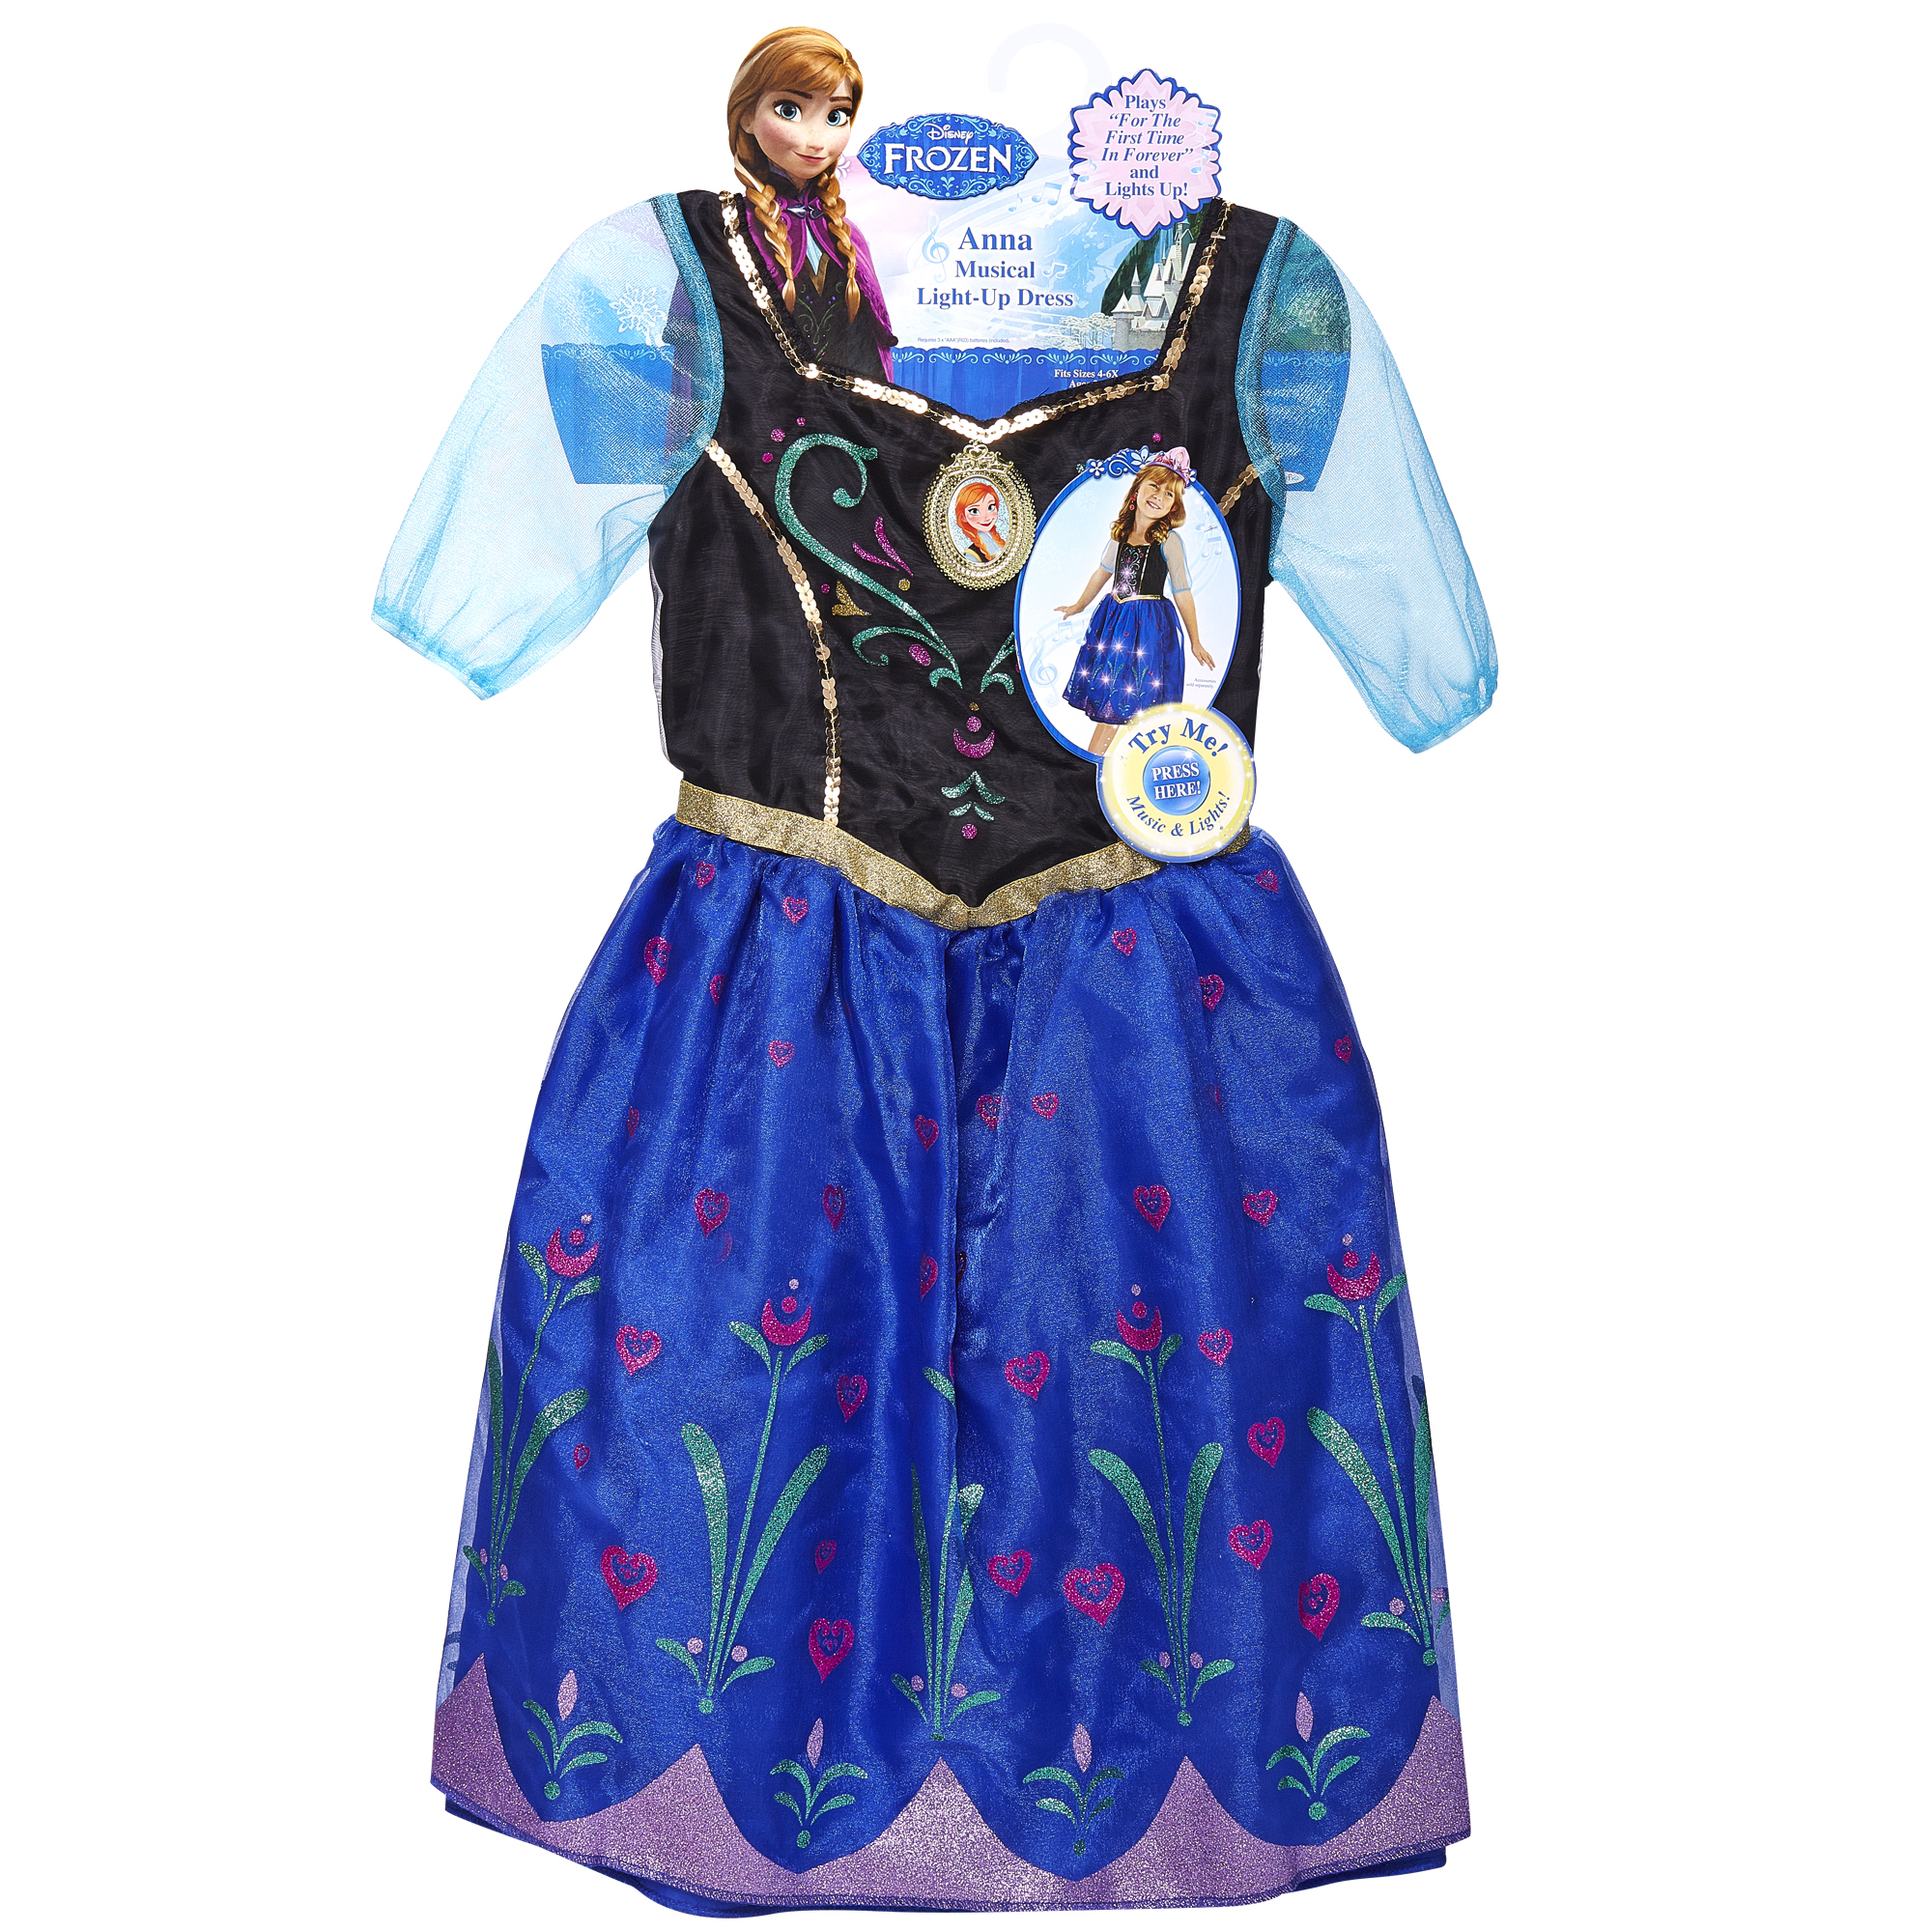 Disney Frozen Anna Musical Light-up Dress